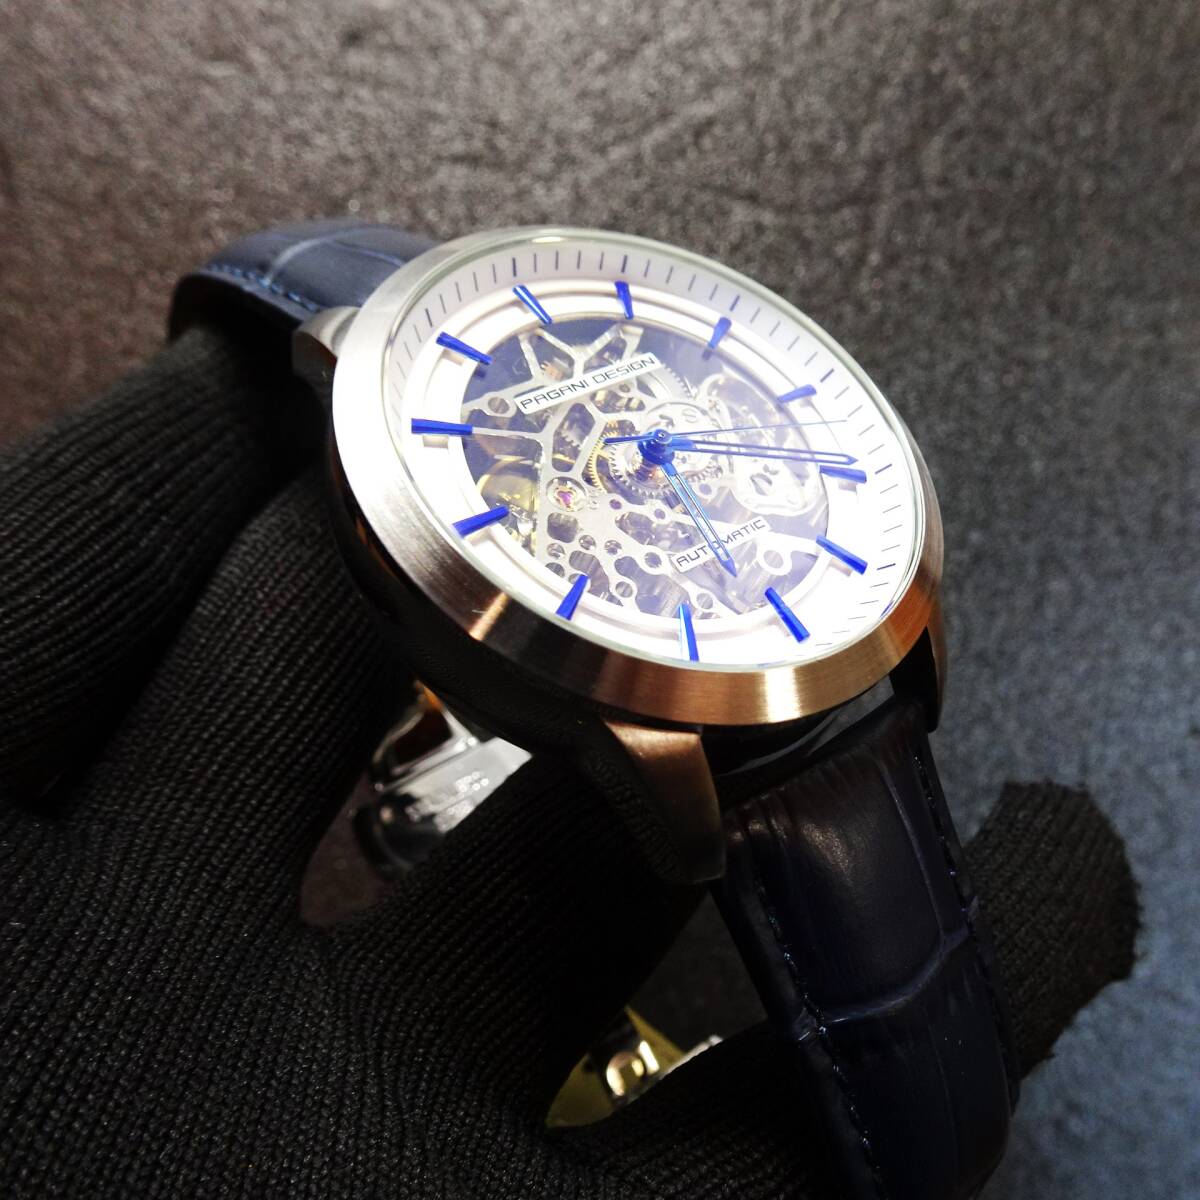 送料無料・新品・パガーニデザインPAGANI DESIGN腕時計メンズスケルトンメカニカルウォッチ自動巻きクロコ型押し本革腕時計PD-1638の画像4